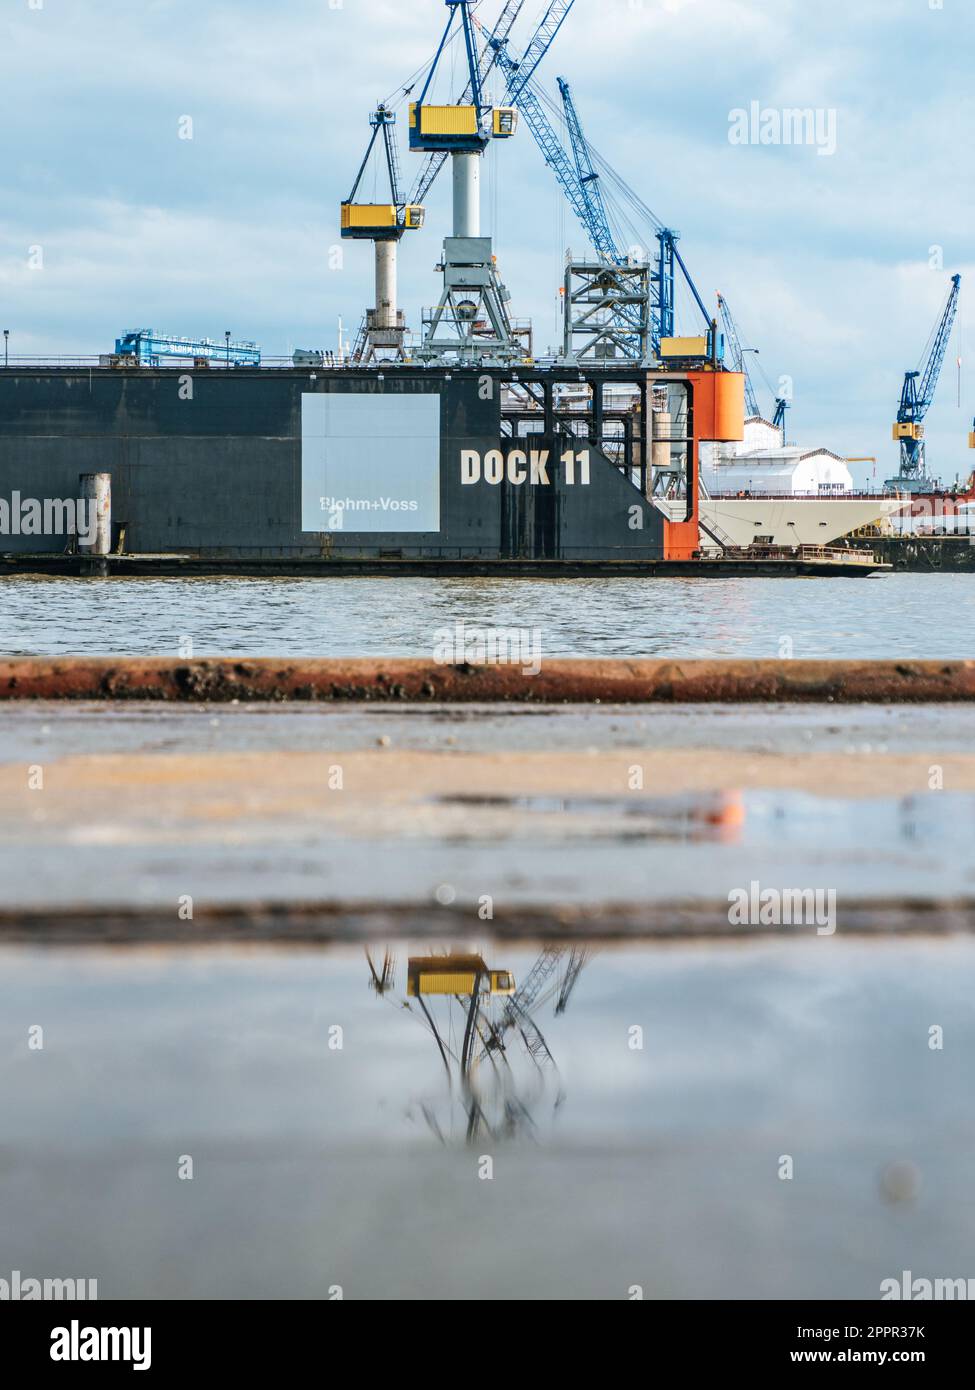 Dock 11 at Hamburg Harbour, Germany on a rainy day Stock Photo